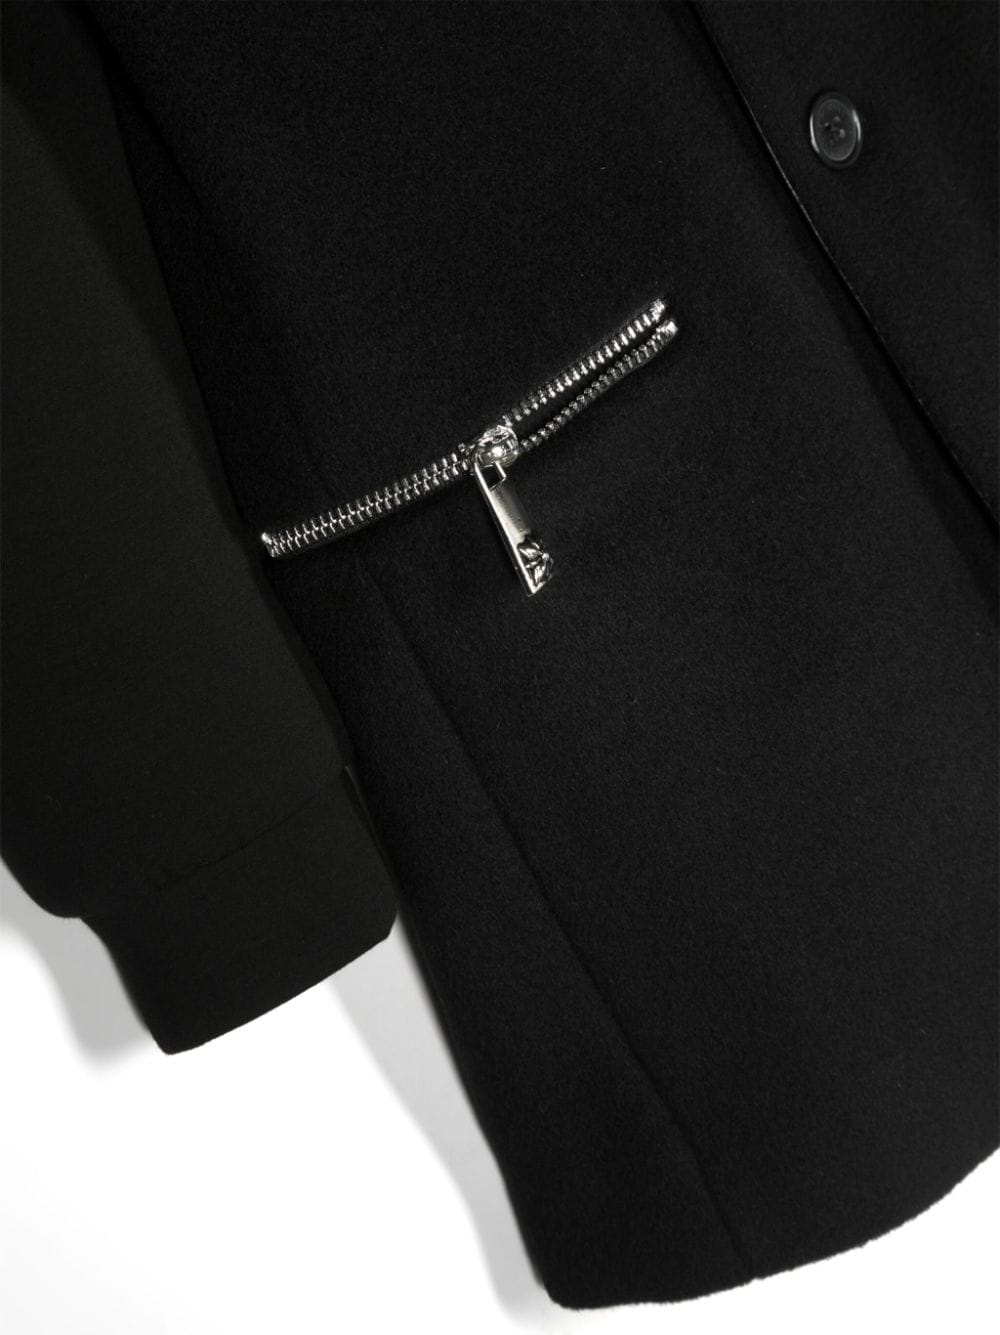 Manteau enfant noir avec application logo